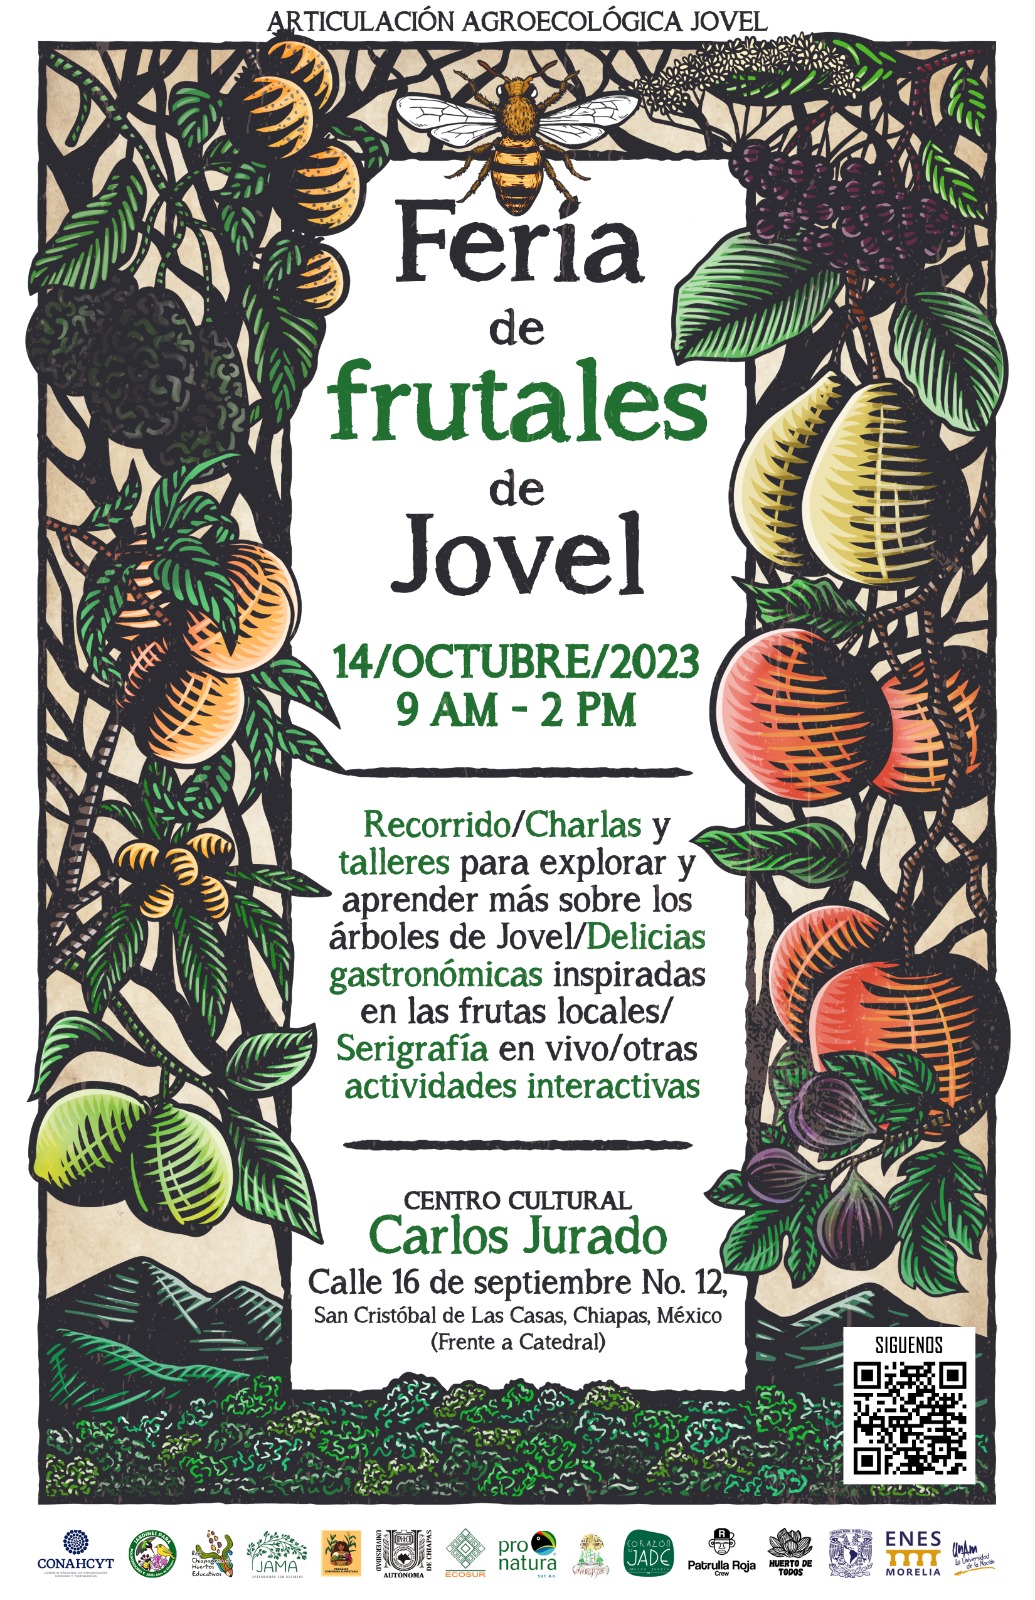 invitación a la primera feria de frutales sábado 14 de octubre en el centro cultural Carlos jurado